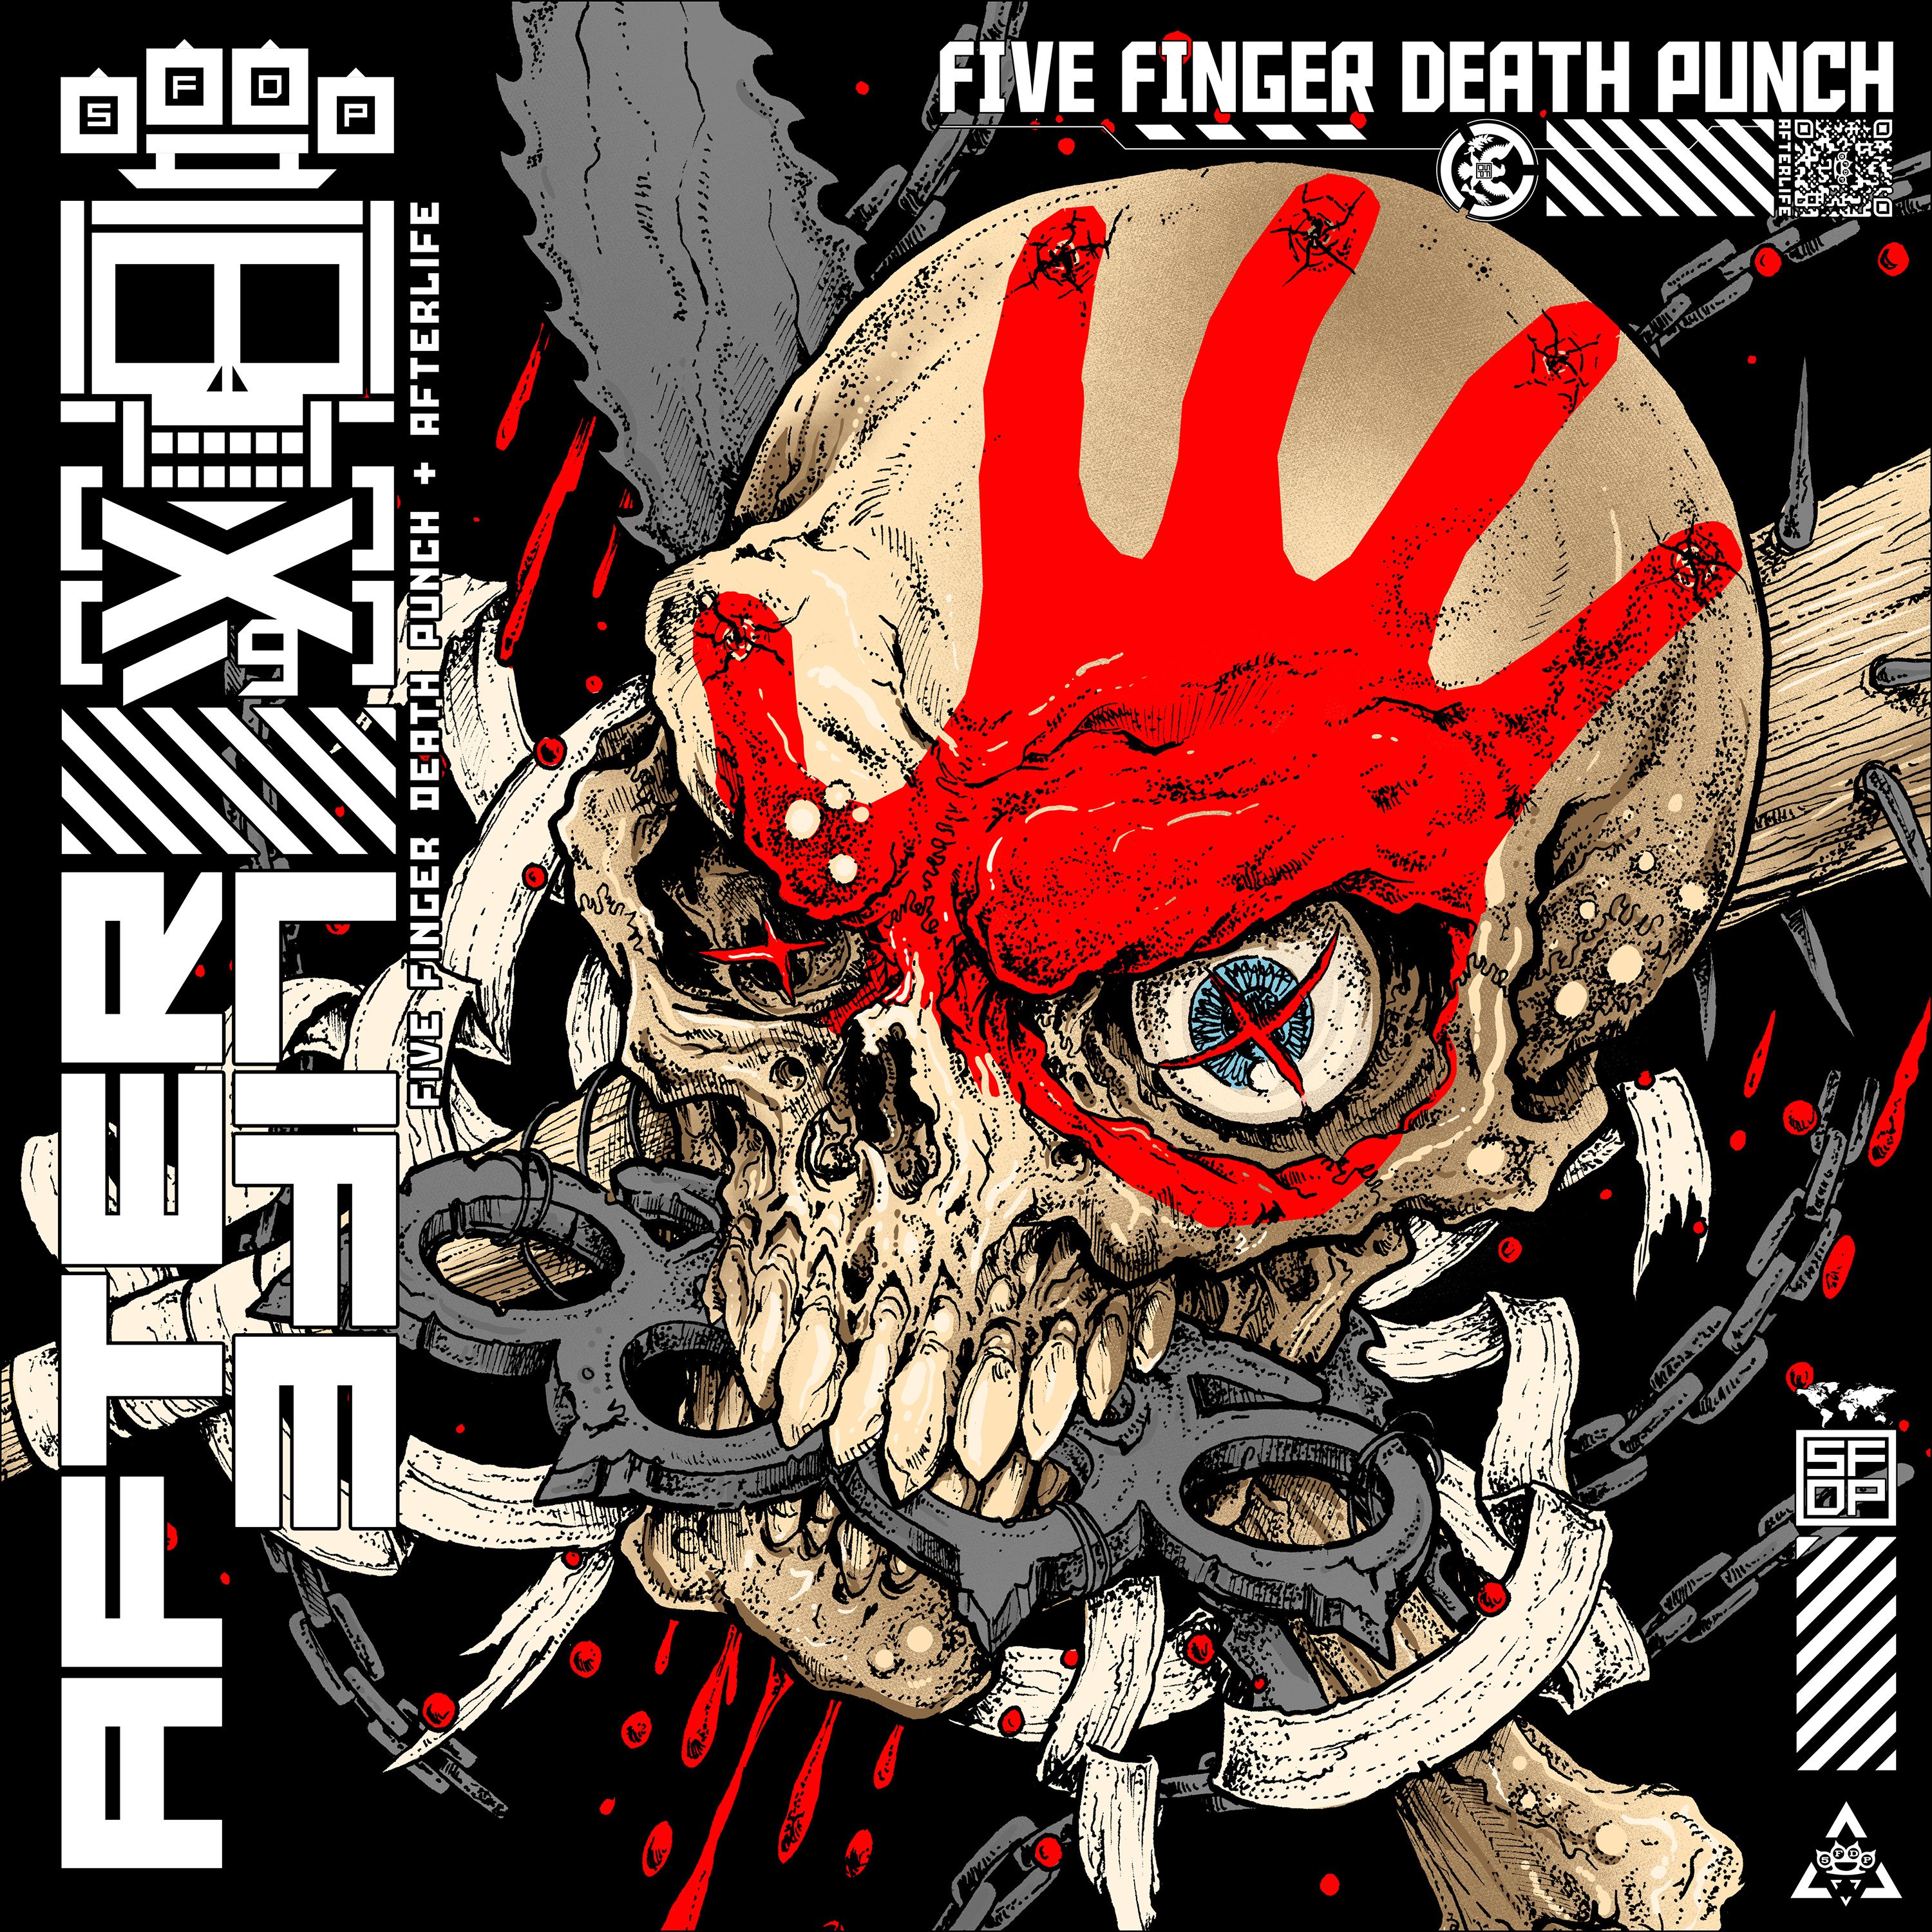 Five Finger Death Punch-Afterlife-CD-FLAC-2022-TOTENKVLT